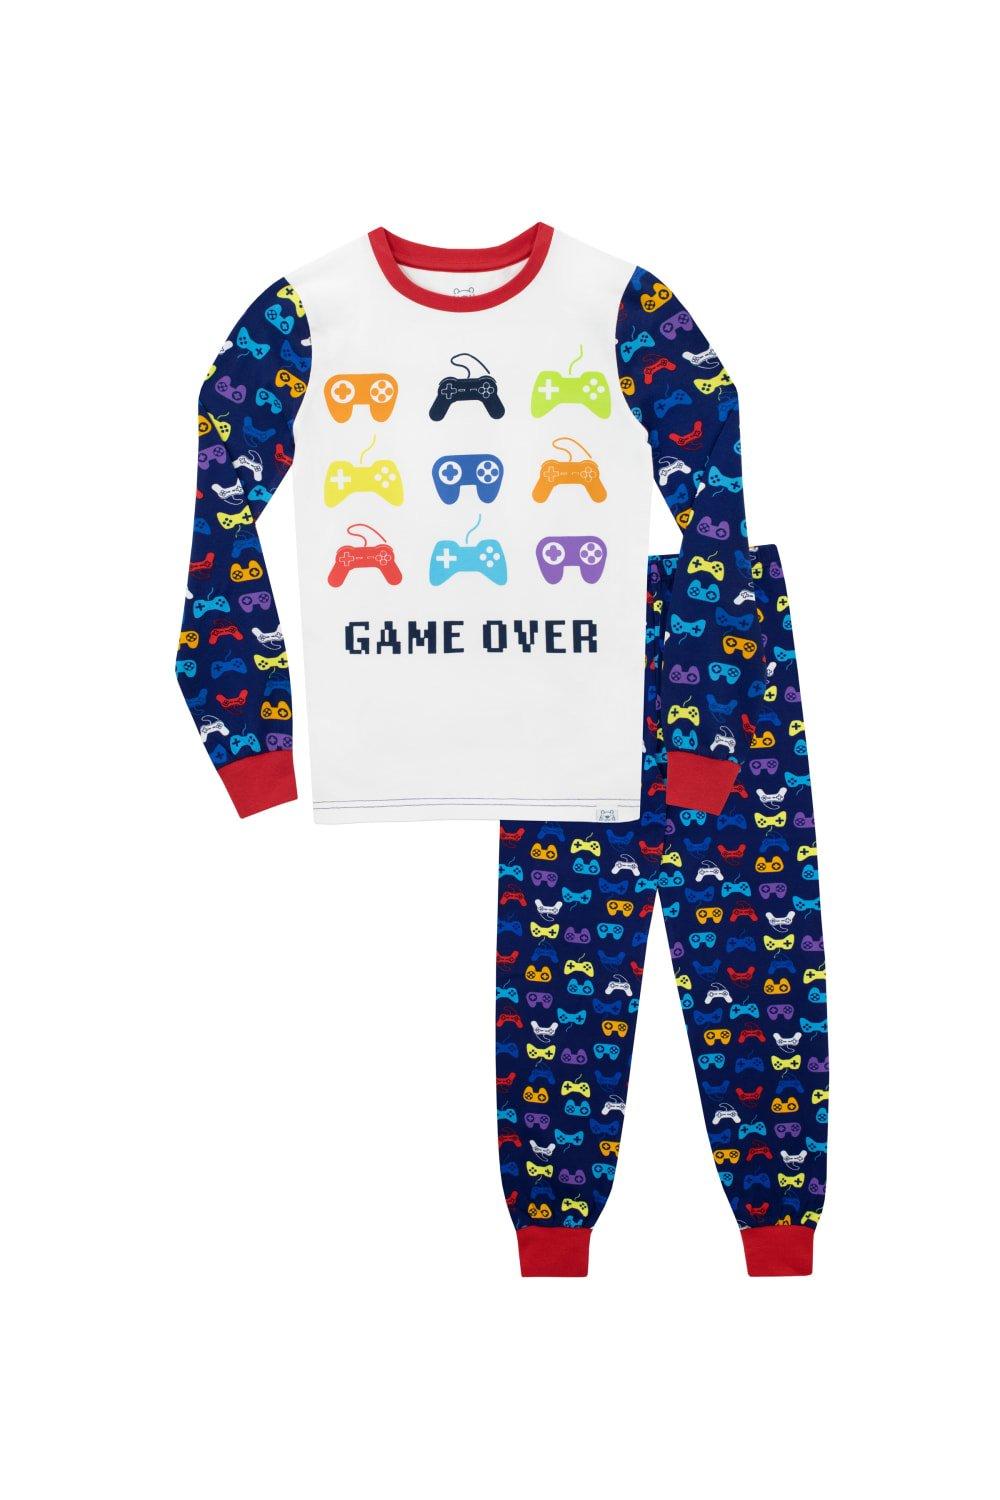 Gaming Snug fit Pyjamas